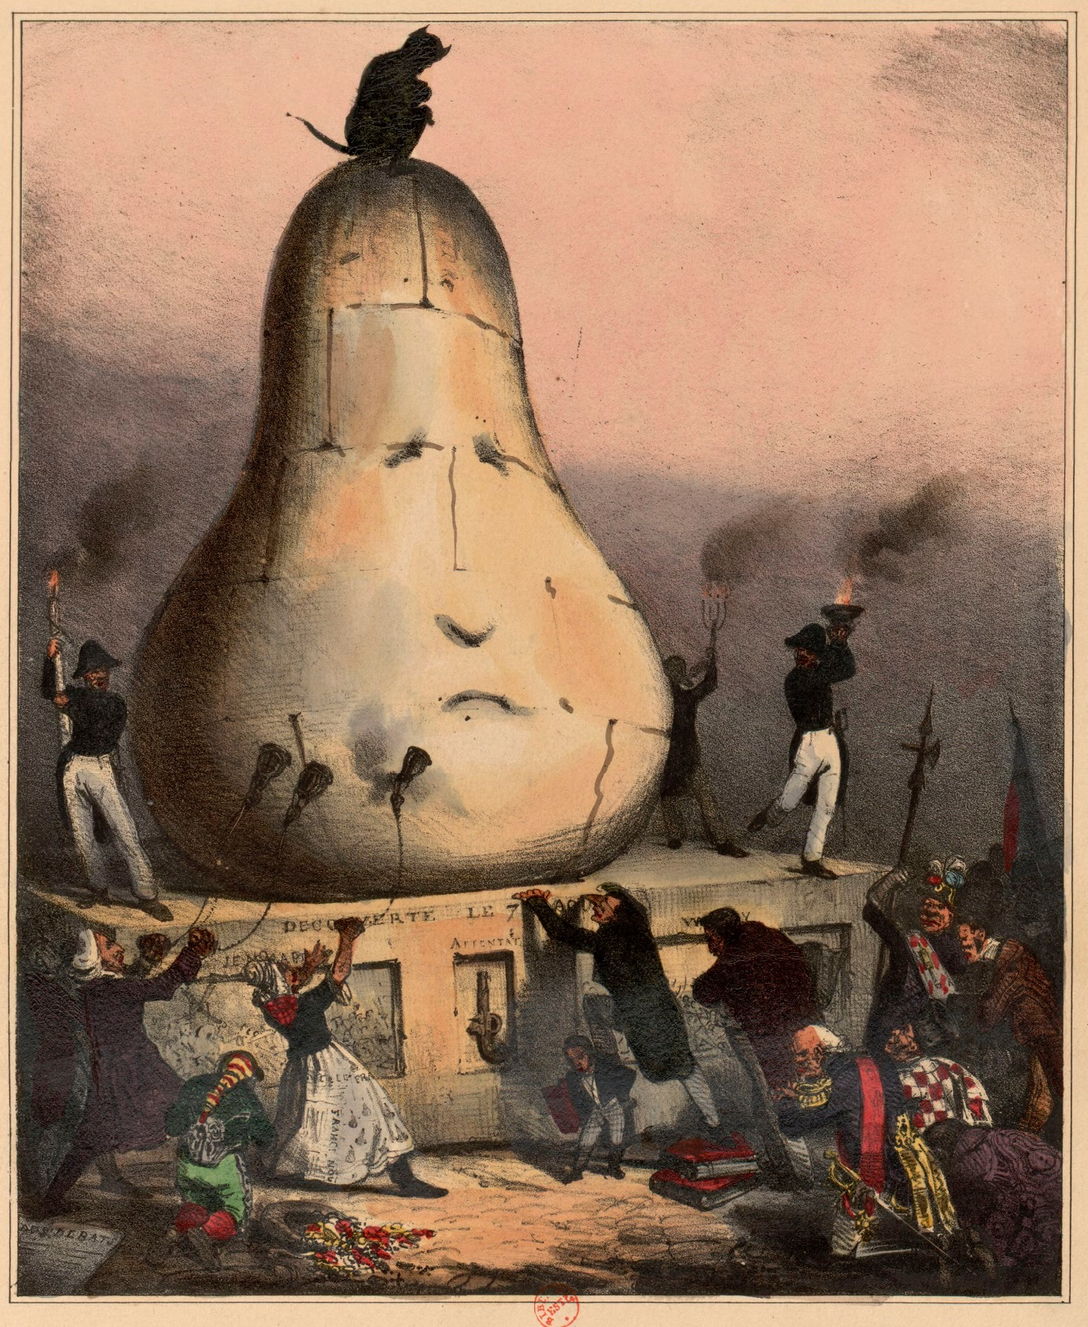 Obelisque élevé à la gloire d'une révolution, et découvert en 1830, au juste milieu de l'arabie heureuse, par une caravane d'épiciers doctrinaires [estampe]